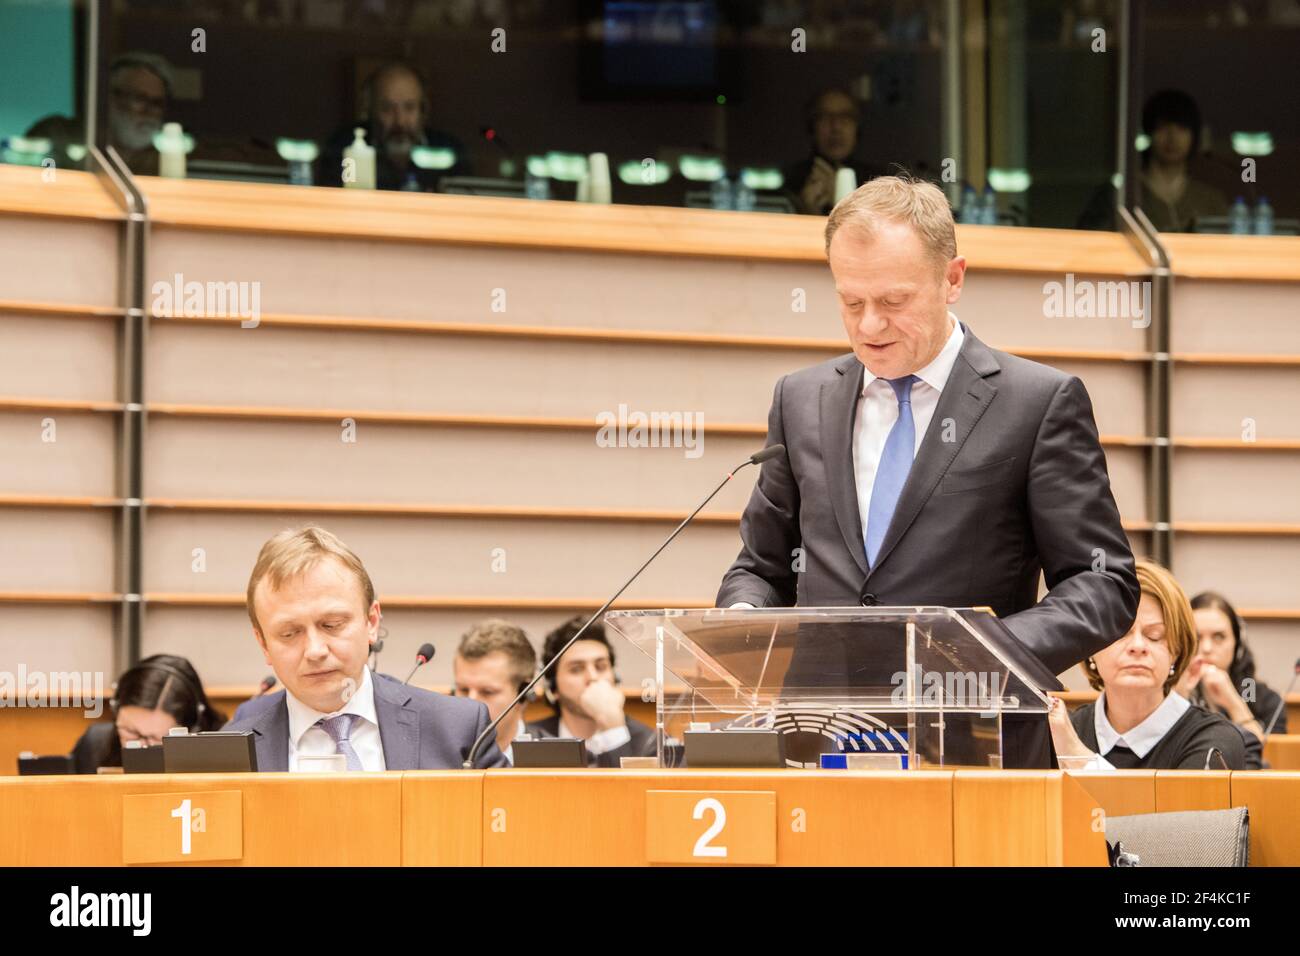 Parlement européen, Bruxelles. Le Président du pays européen, M. Donald Tusk, prononce une déclaration devant le Parlement européen, au cours de la séance du 24 février 2016. Banque D'Images